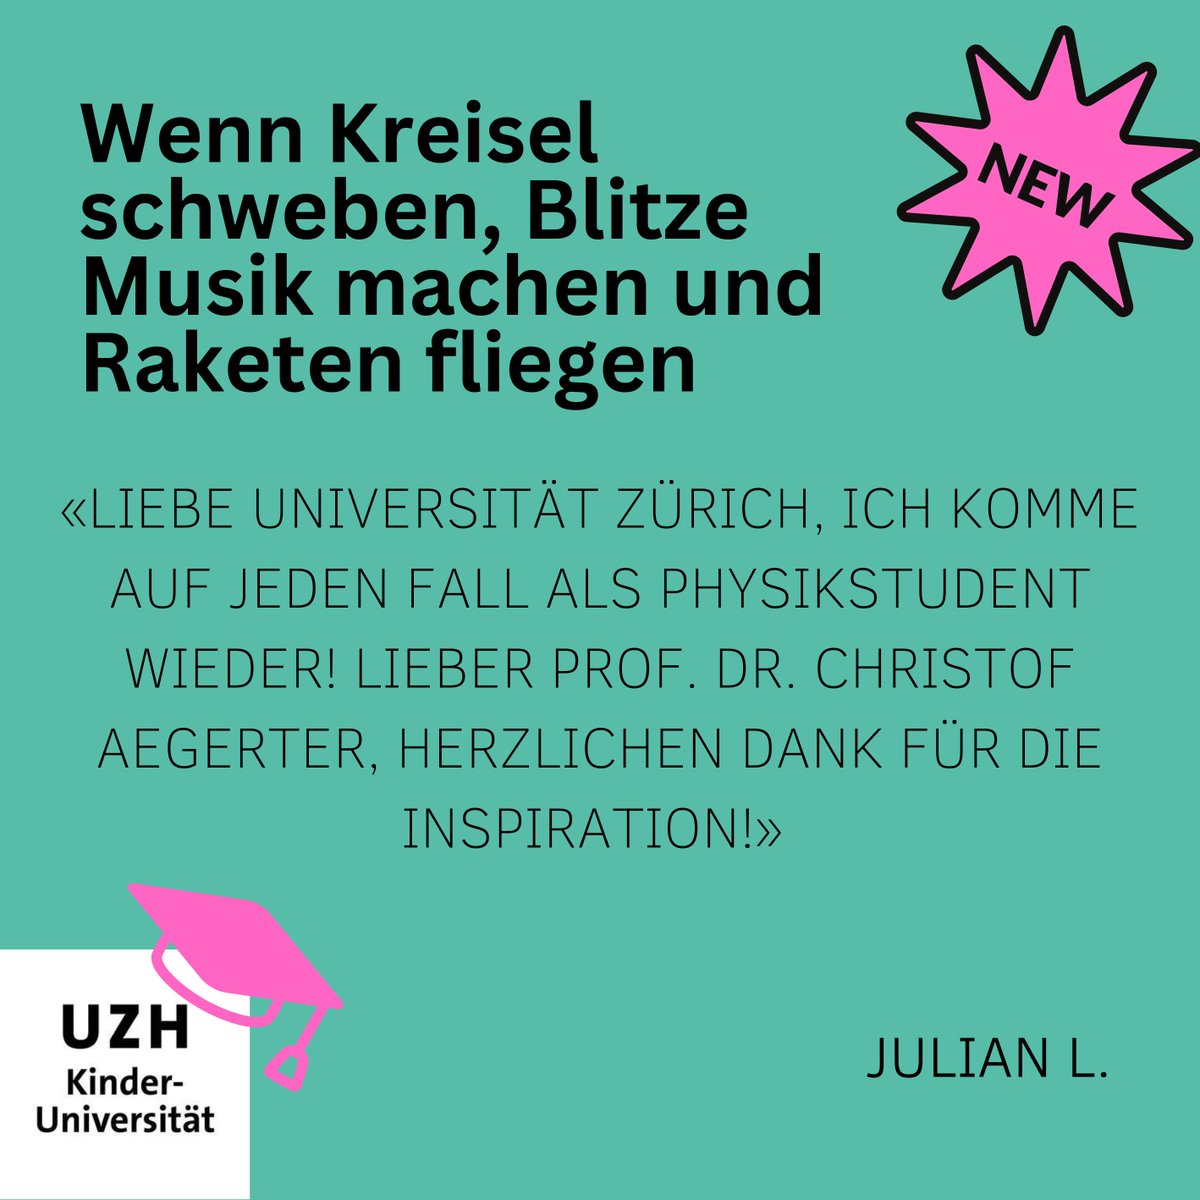 Unsere Vorlesungen wirken!
Die @UZH_ch  kann sich darauf freuen, in ein paar Jahren den top-motivierten Julian als Studenten begrüssen zu dürfen.

Mehr Feedbacks und Berichte aus den Vorlesungen gibt es auf unserer Webseite:
kinderuniversitaet.uzh.ch/de/kinderrepor…

#kinderuniversität
#kinderuni